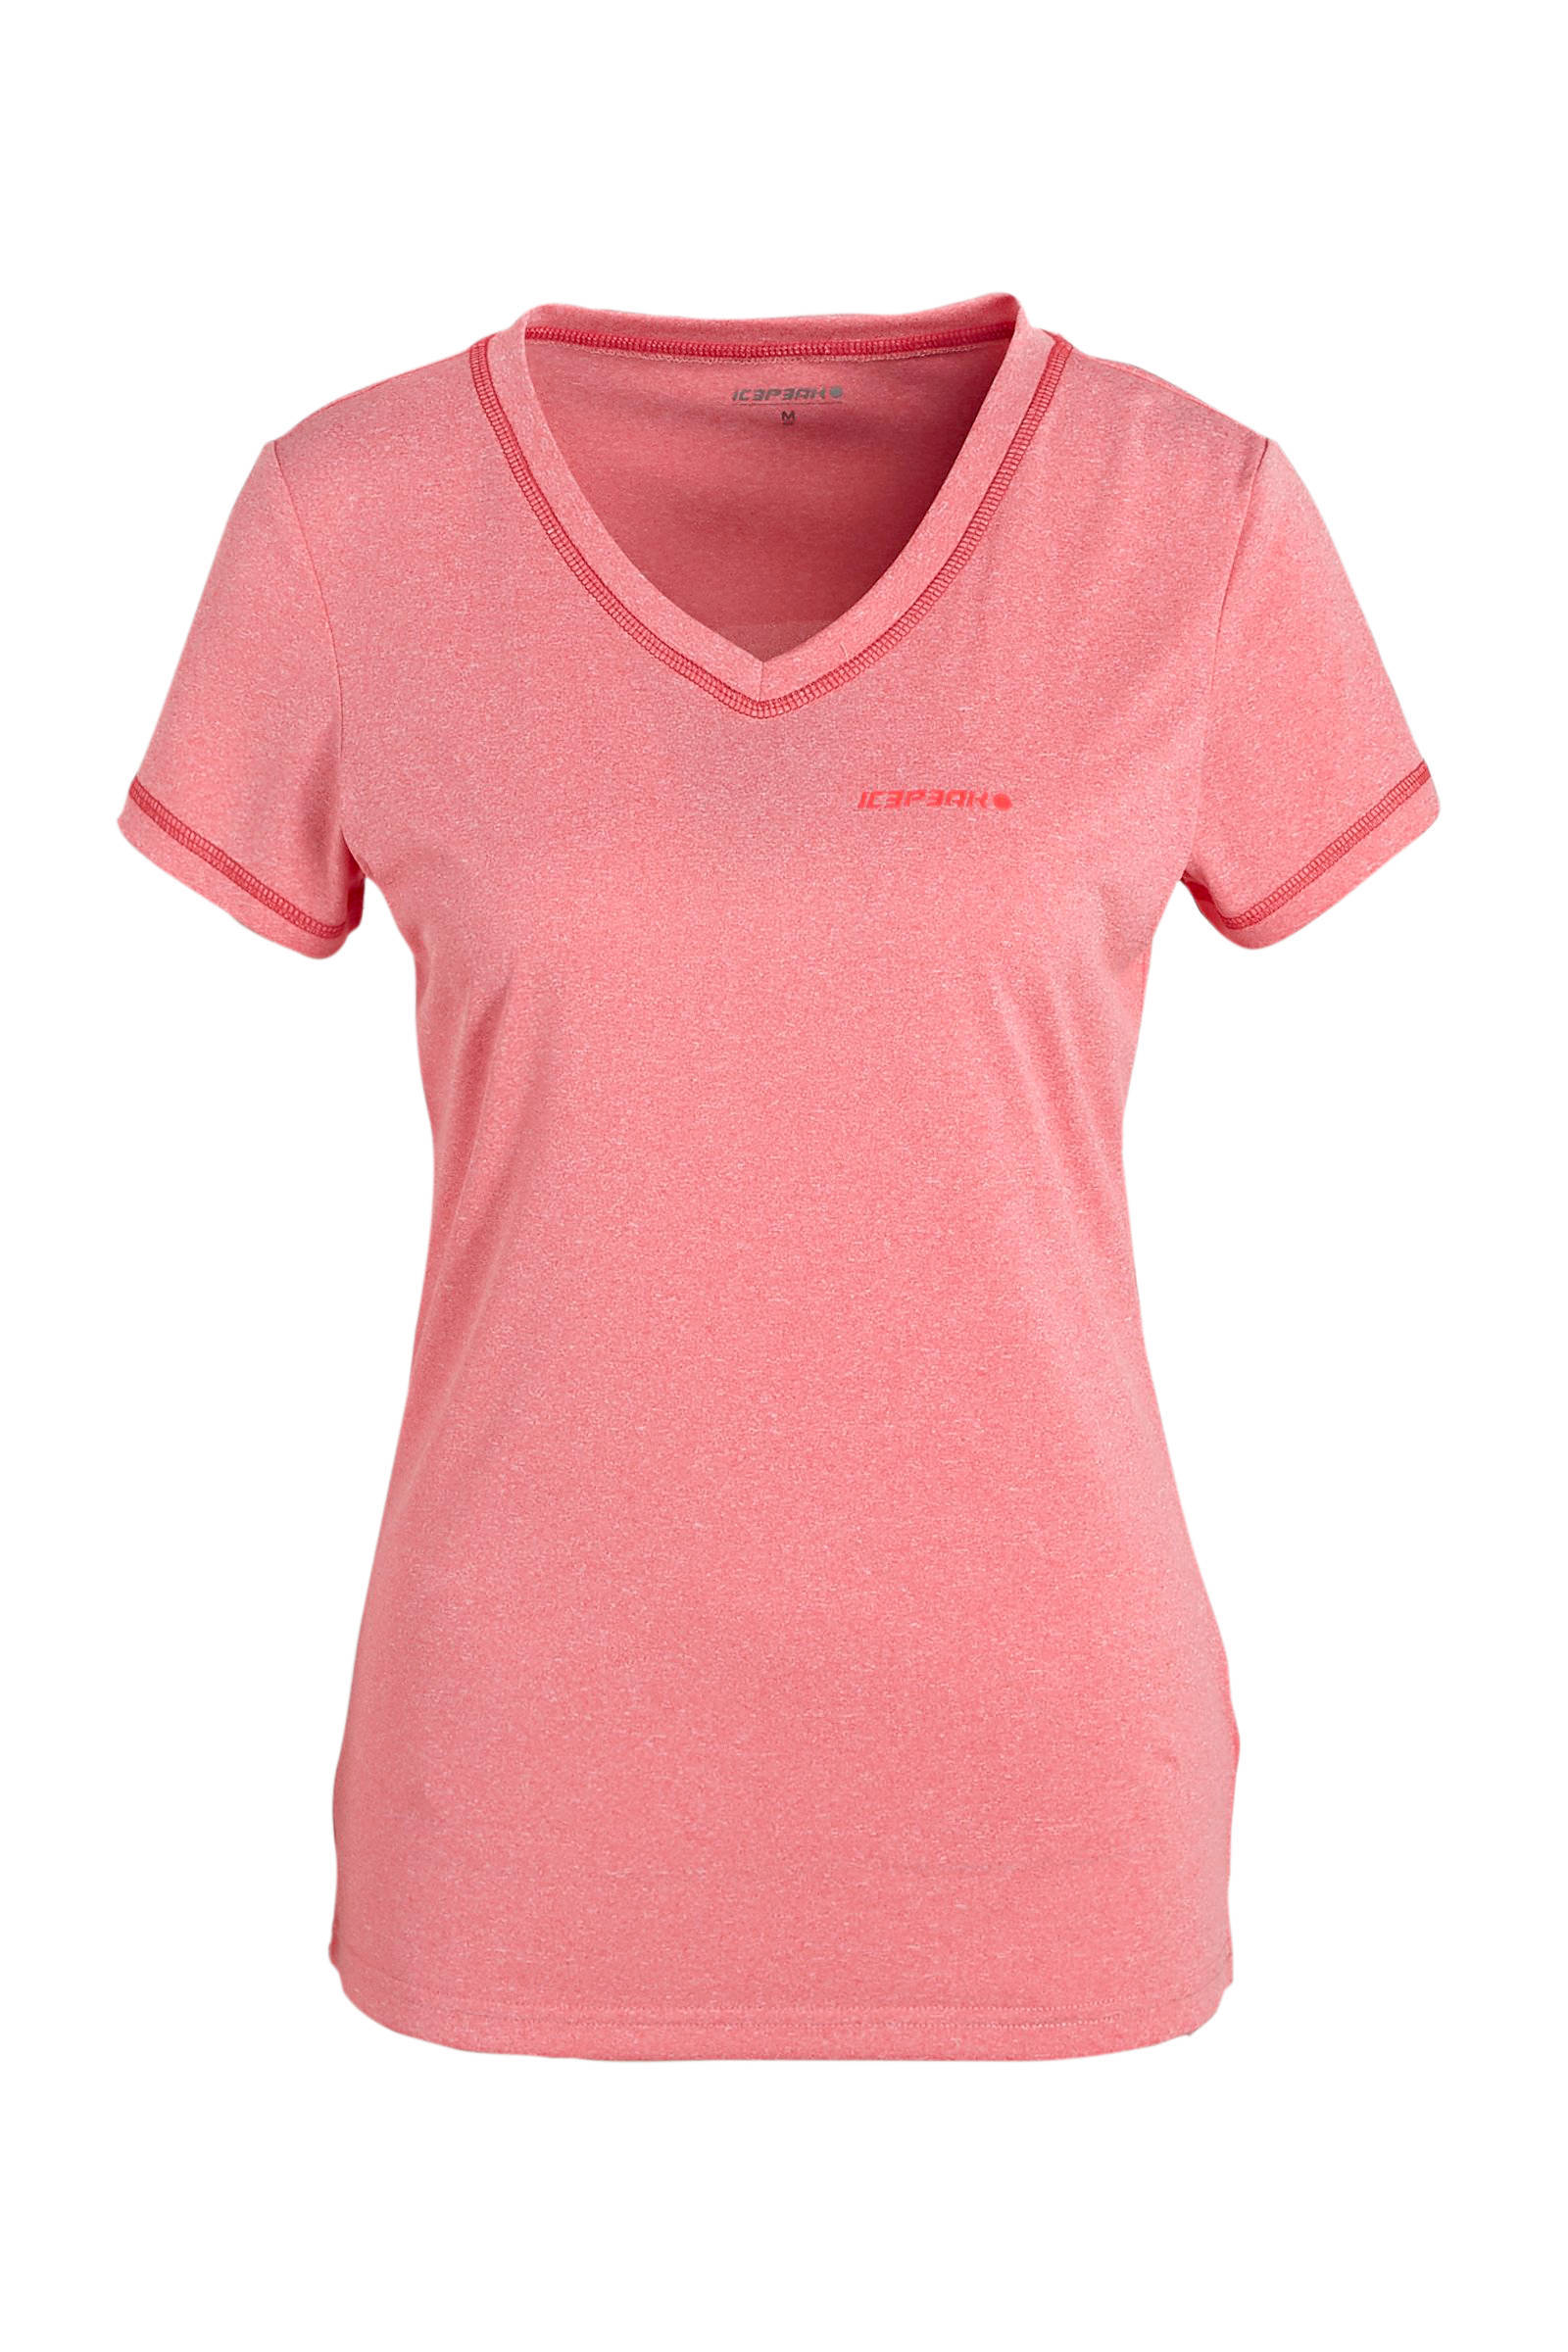 Icepeak T-shirt Beasley roze online kopen